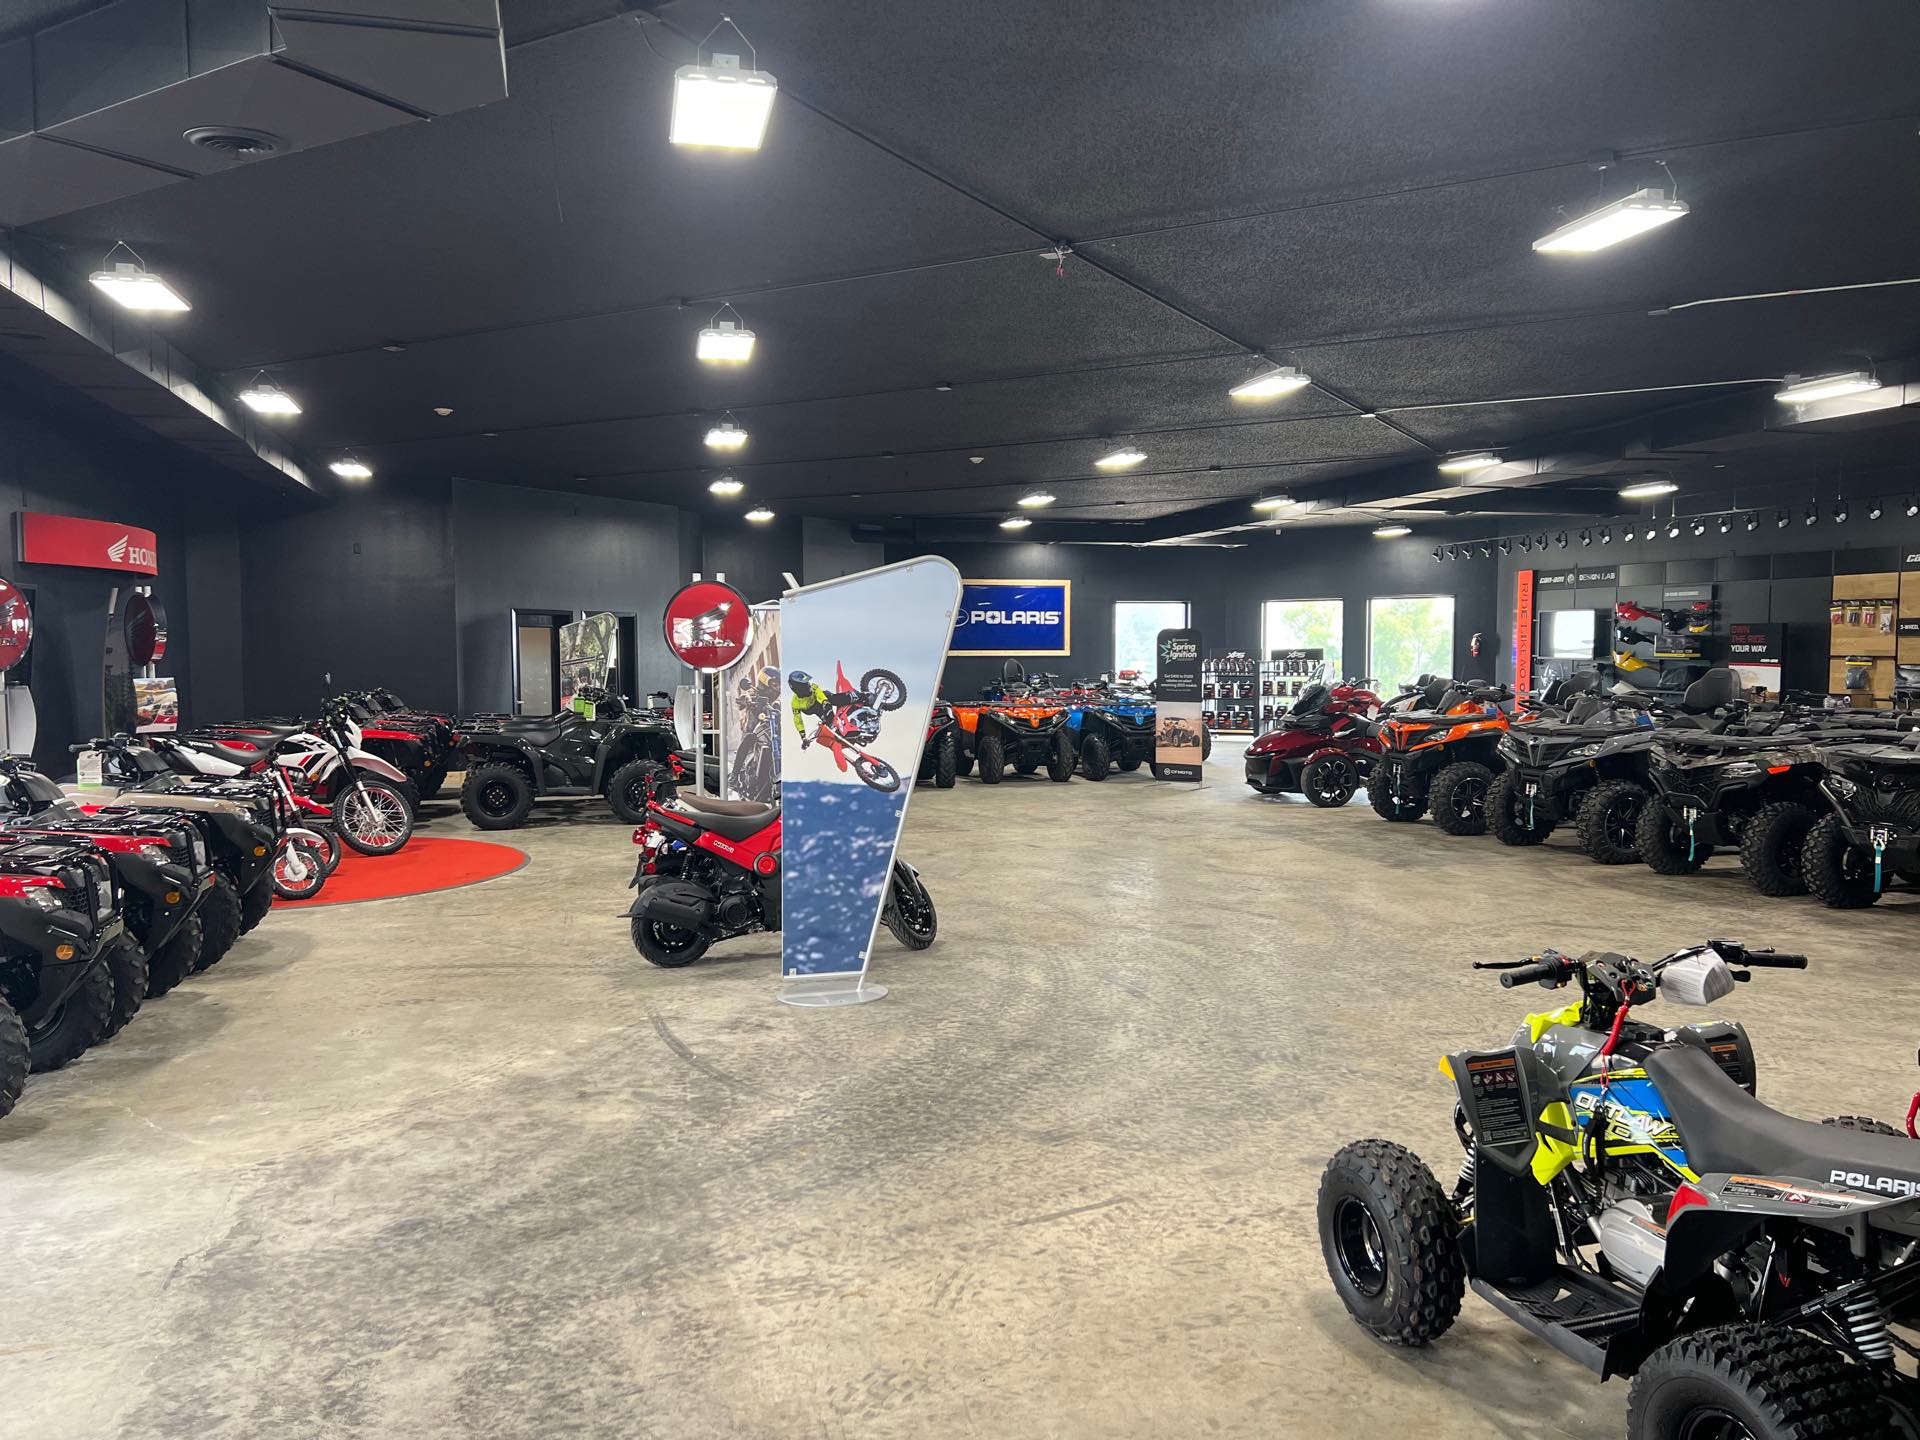 2019 Yamaha Kodiak 450 at Iron Hill Powersports